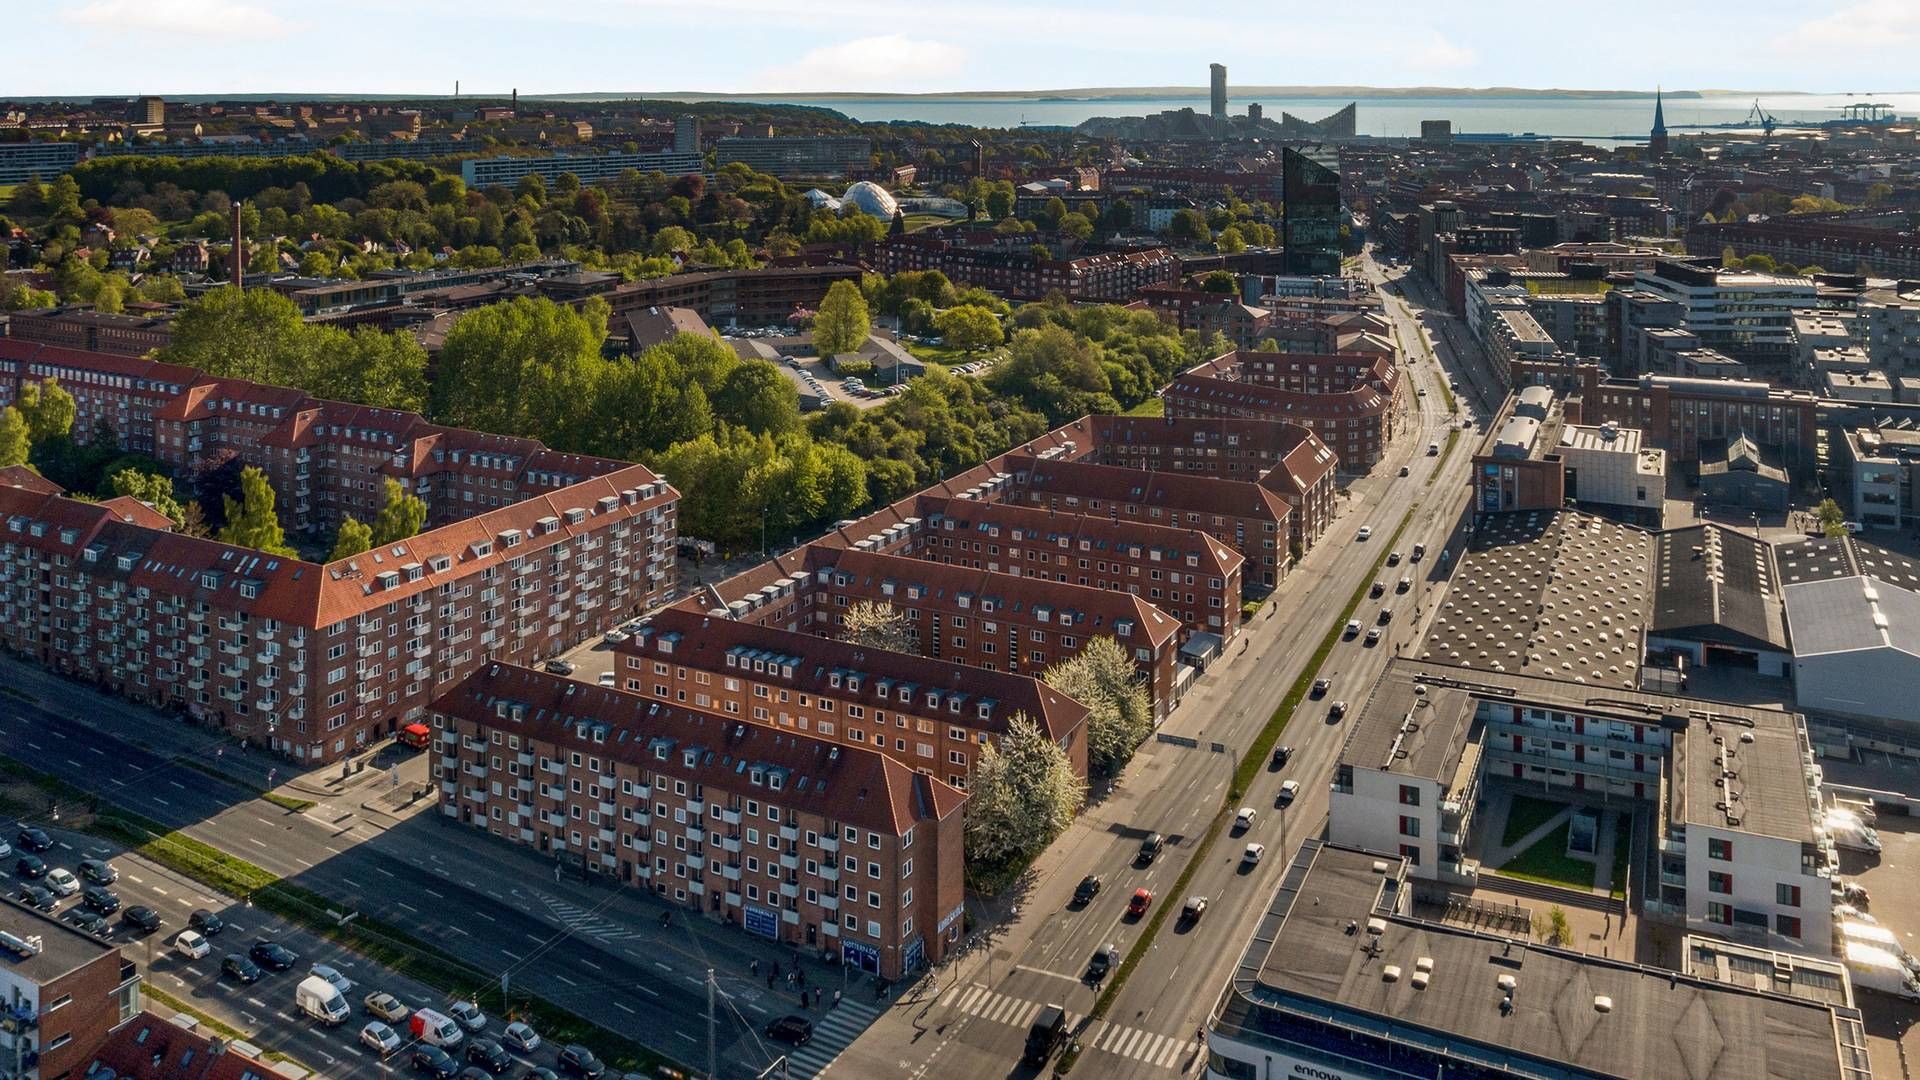 Solgården ligger i midten af billedet mellem flere karakteristiske røde boligudlejningsejendomme langs Silkeborgvej i Aarhus. | Foto: Pr / Nordicals